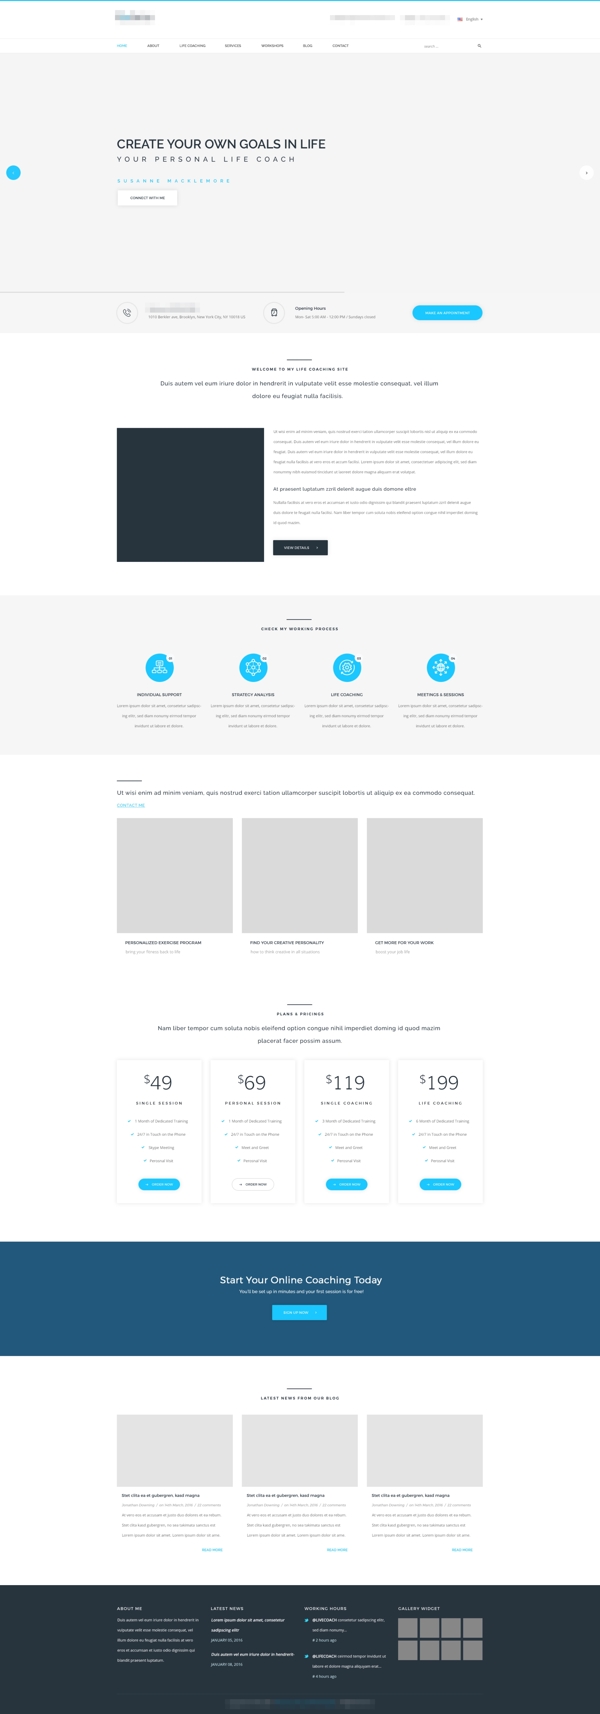 简洁精美的蓝色科技商务网站模板首页设计